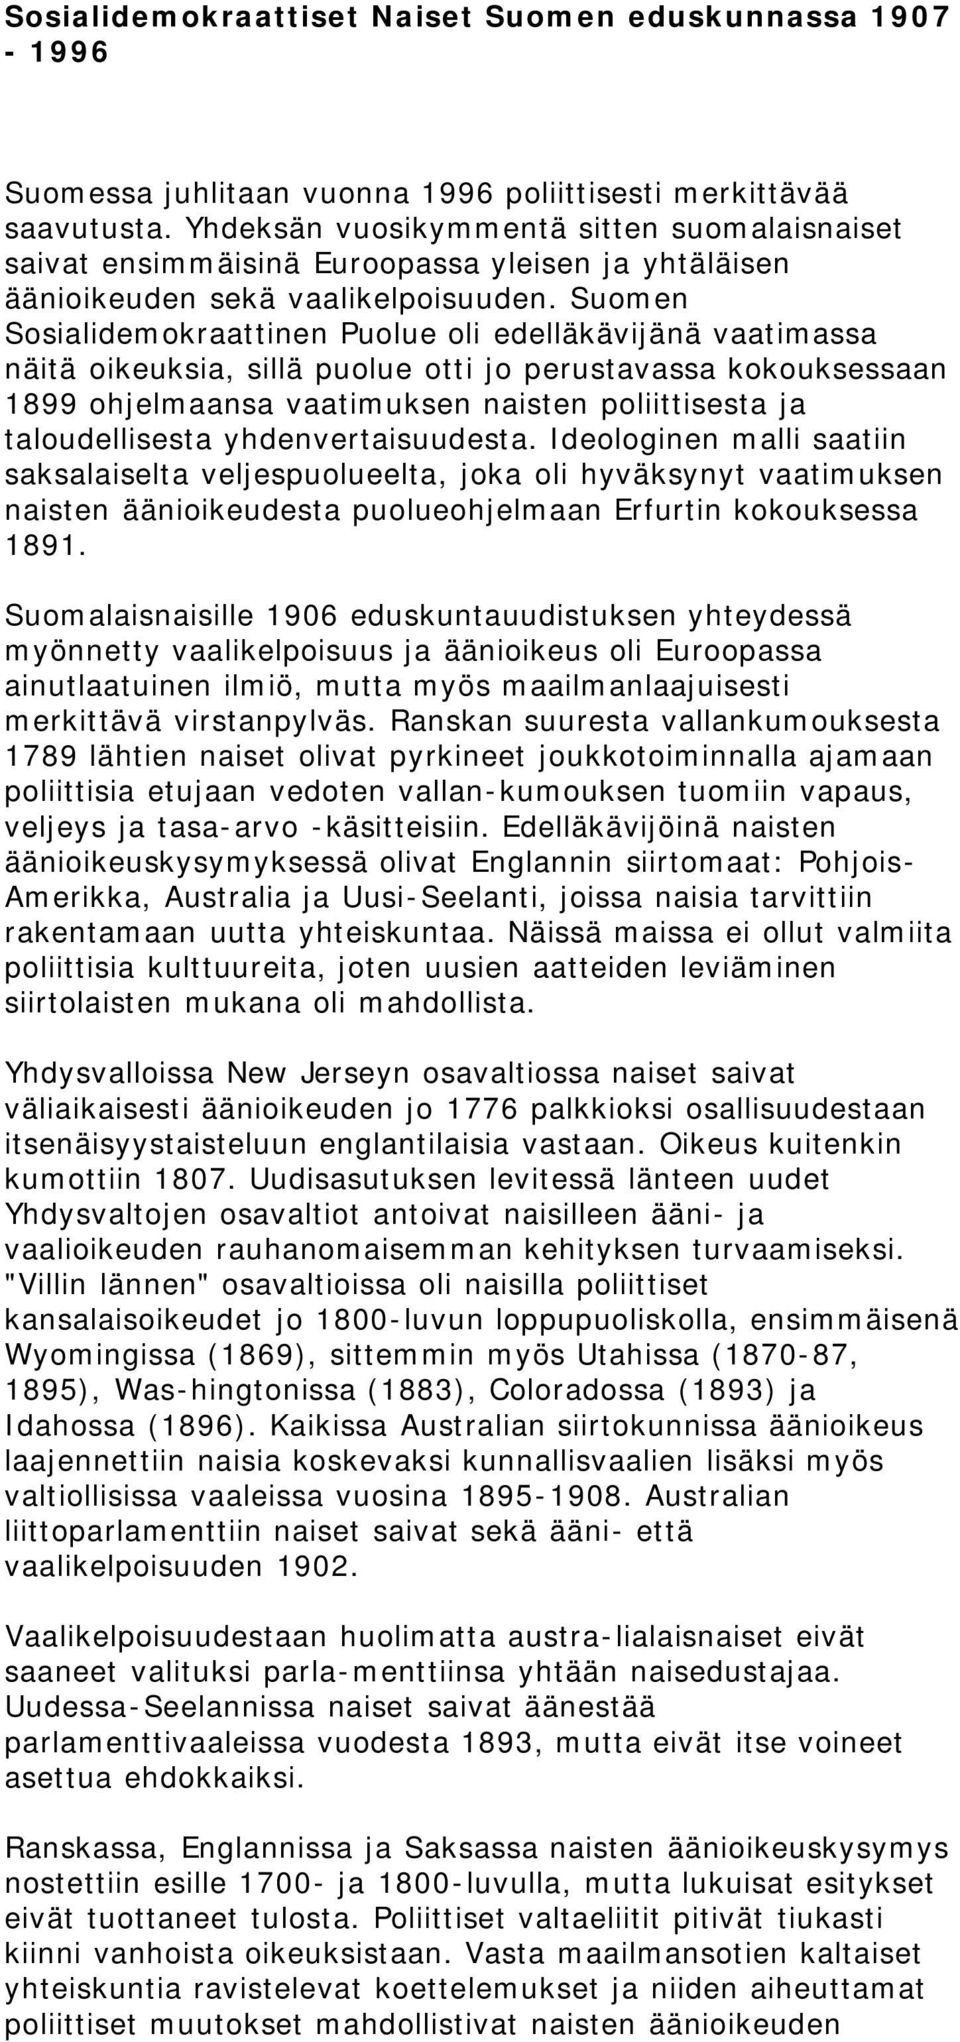 Suomen Sosialidemokraattinen Puolue oli edelläkävijänä vaatimassa näitä oikeuksia, sillä puolue otti jo perustavassa kokouksessaan 1899 ohjelmaansa vaatimuksen naisten poliittisesta ja